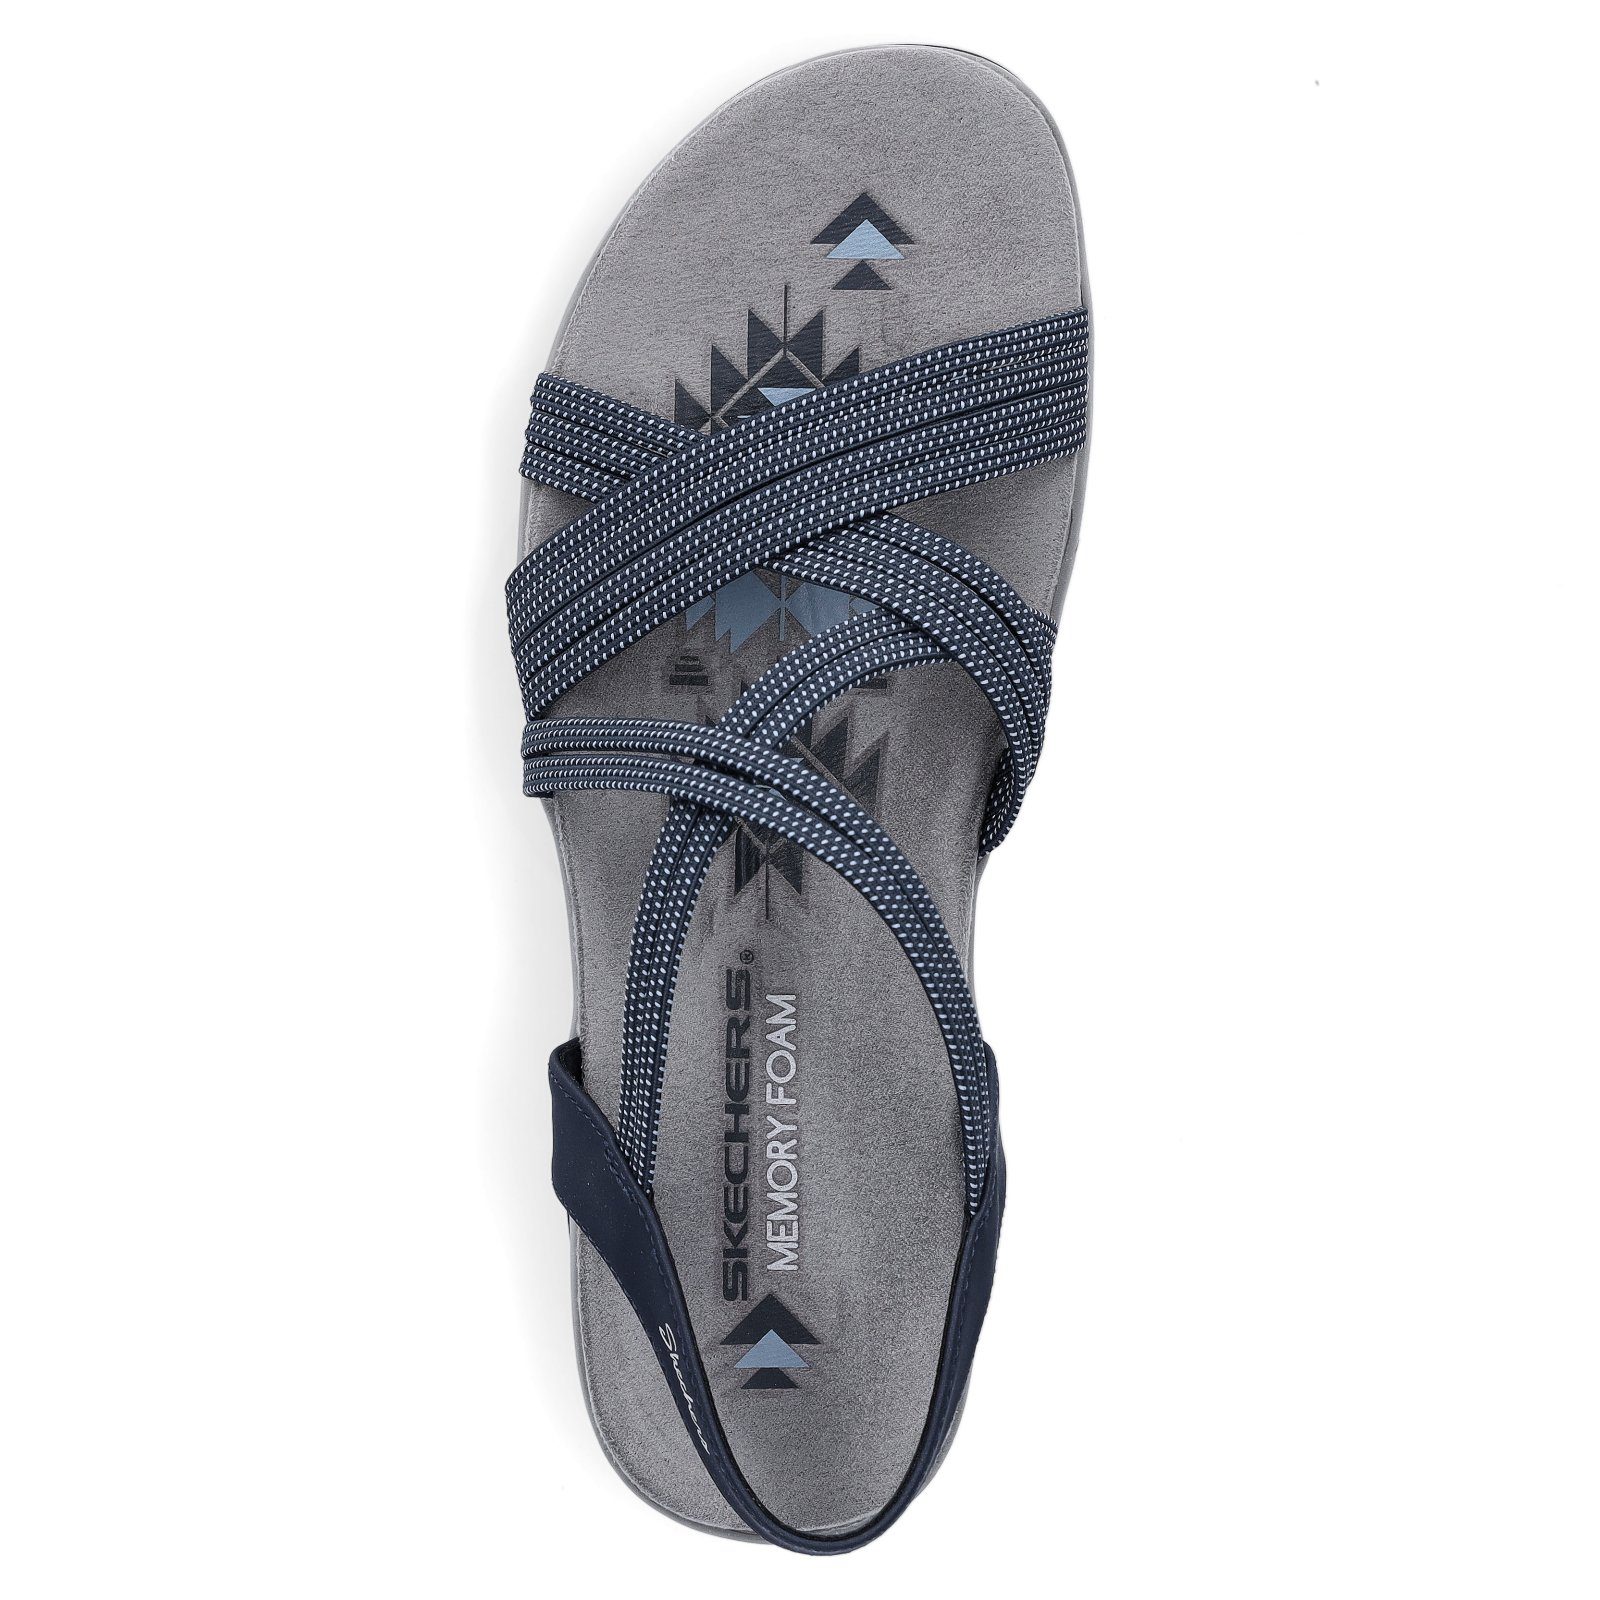 Sandale Reggae Skechers Skechers marine Sandale Damen Slim (20202745) blau Blau